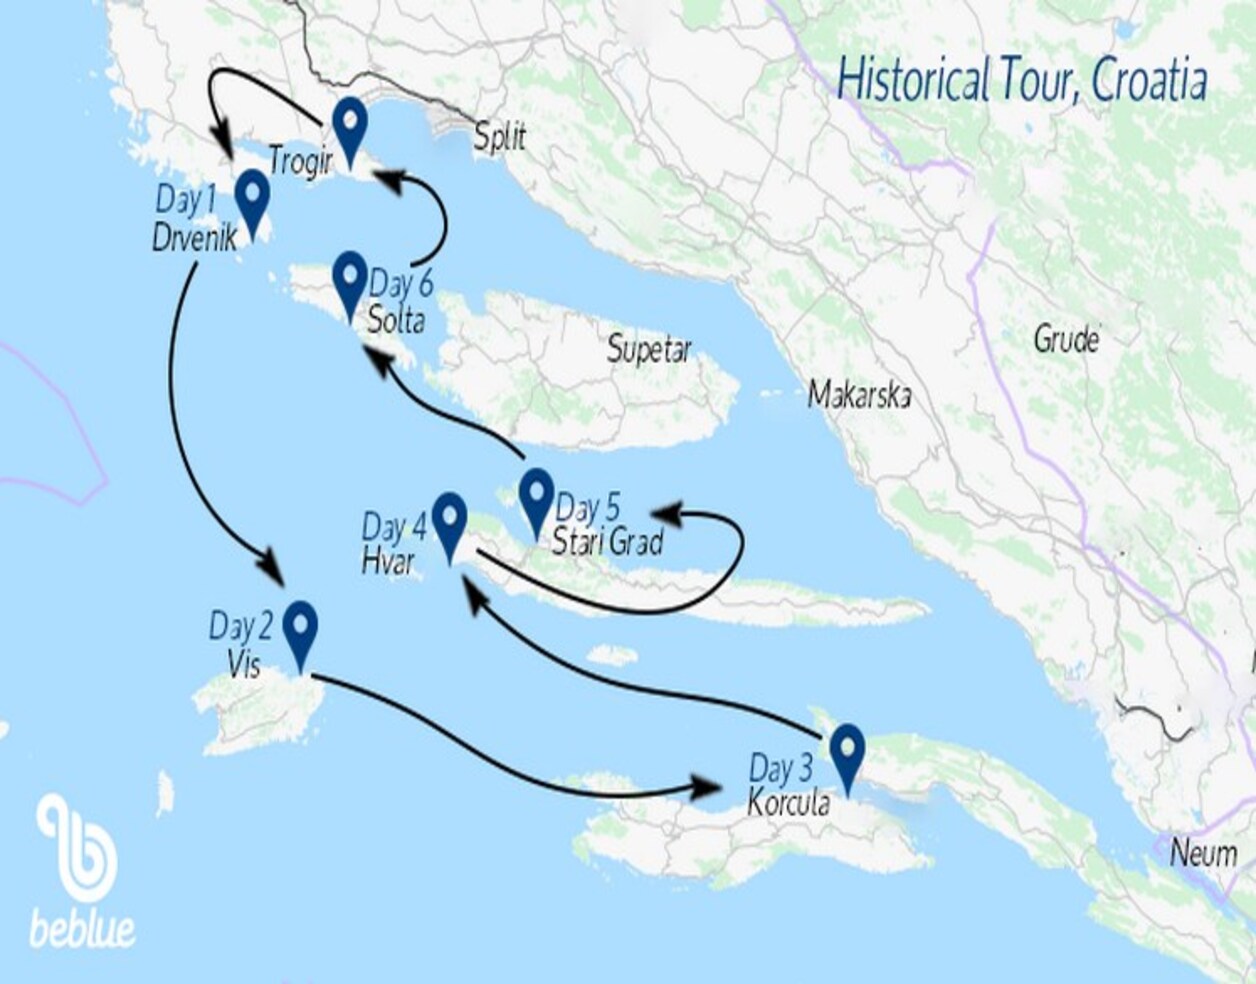 Rotta storica: Spalato e la Croazia - ID 419